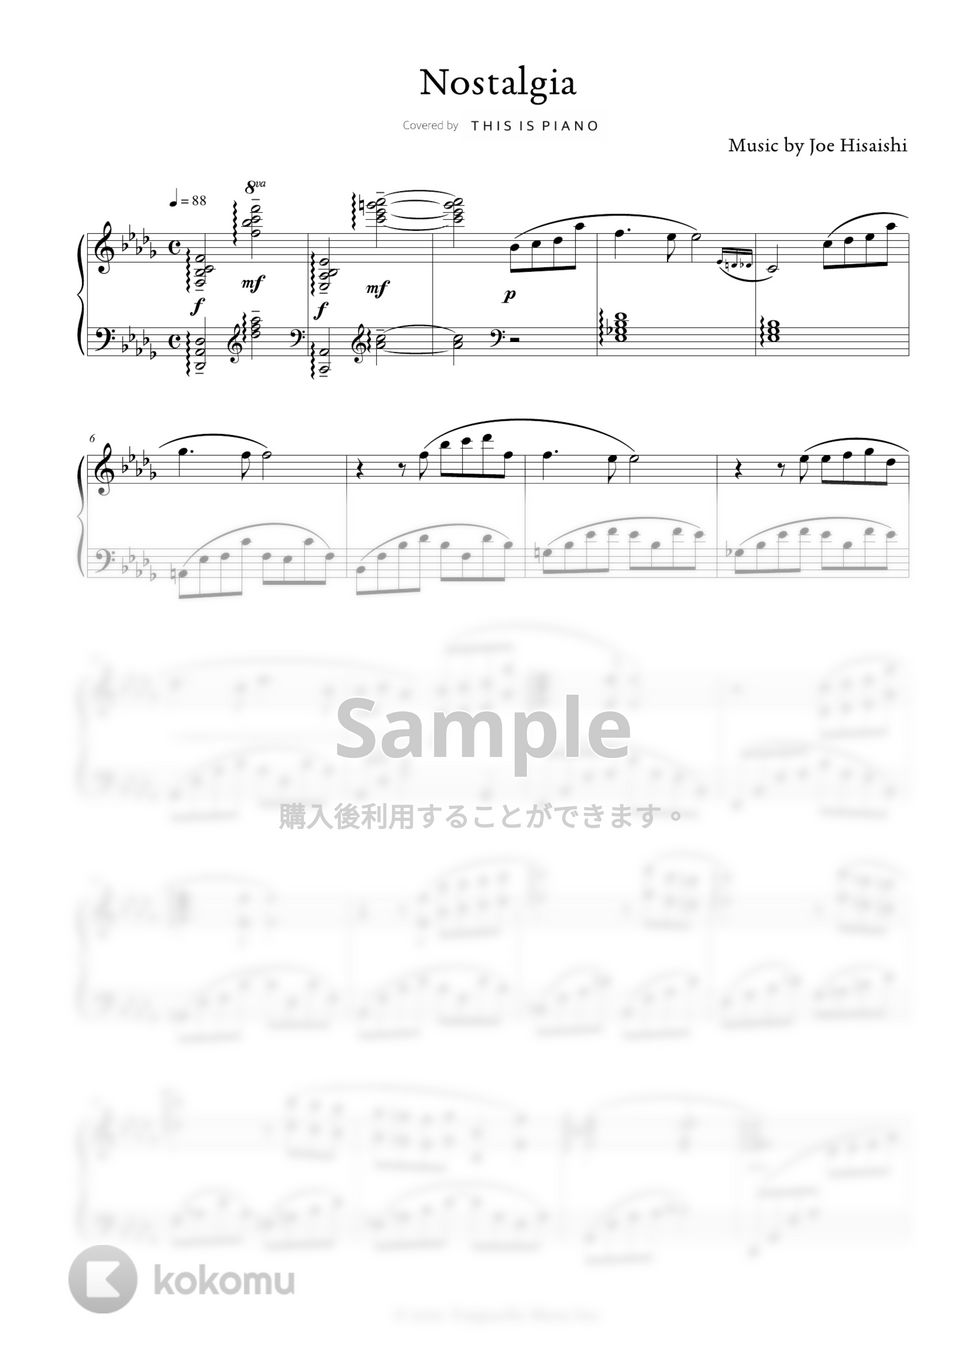 久石譲 - Nostalgia by THIS IS PIANO